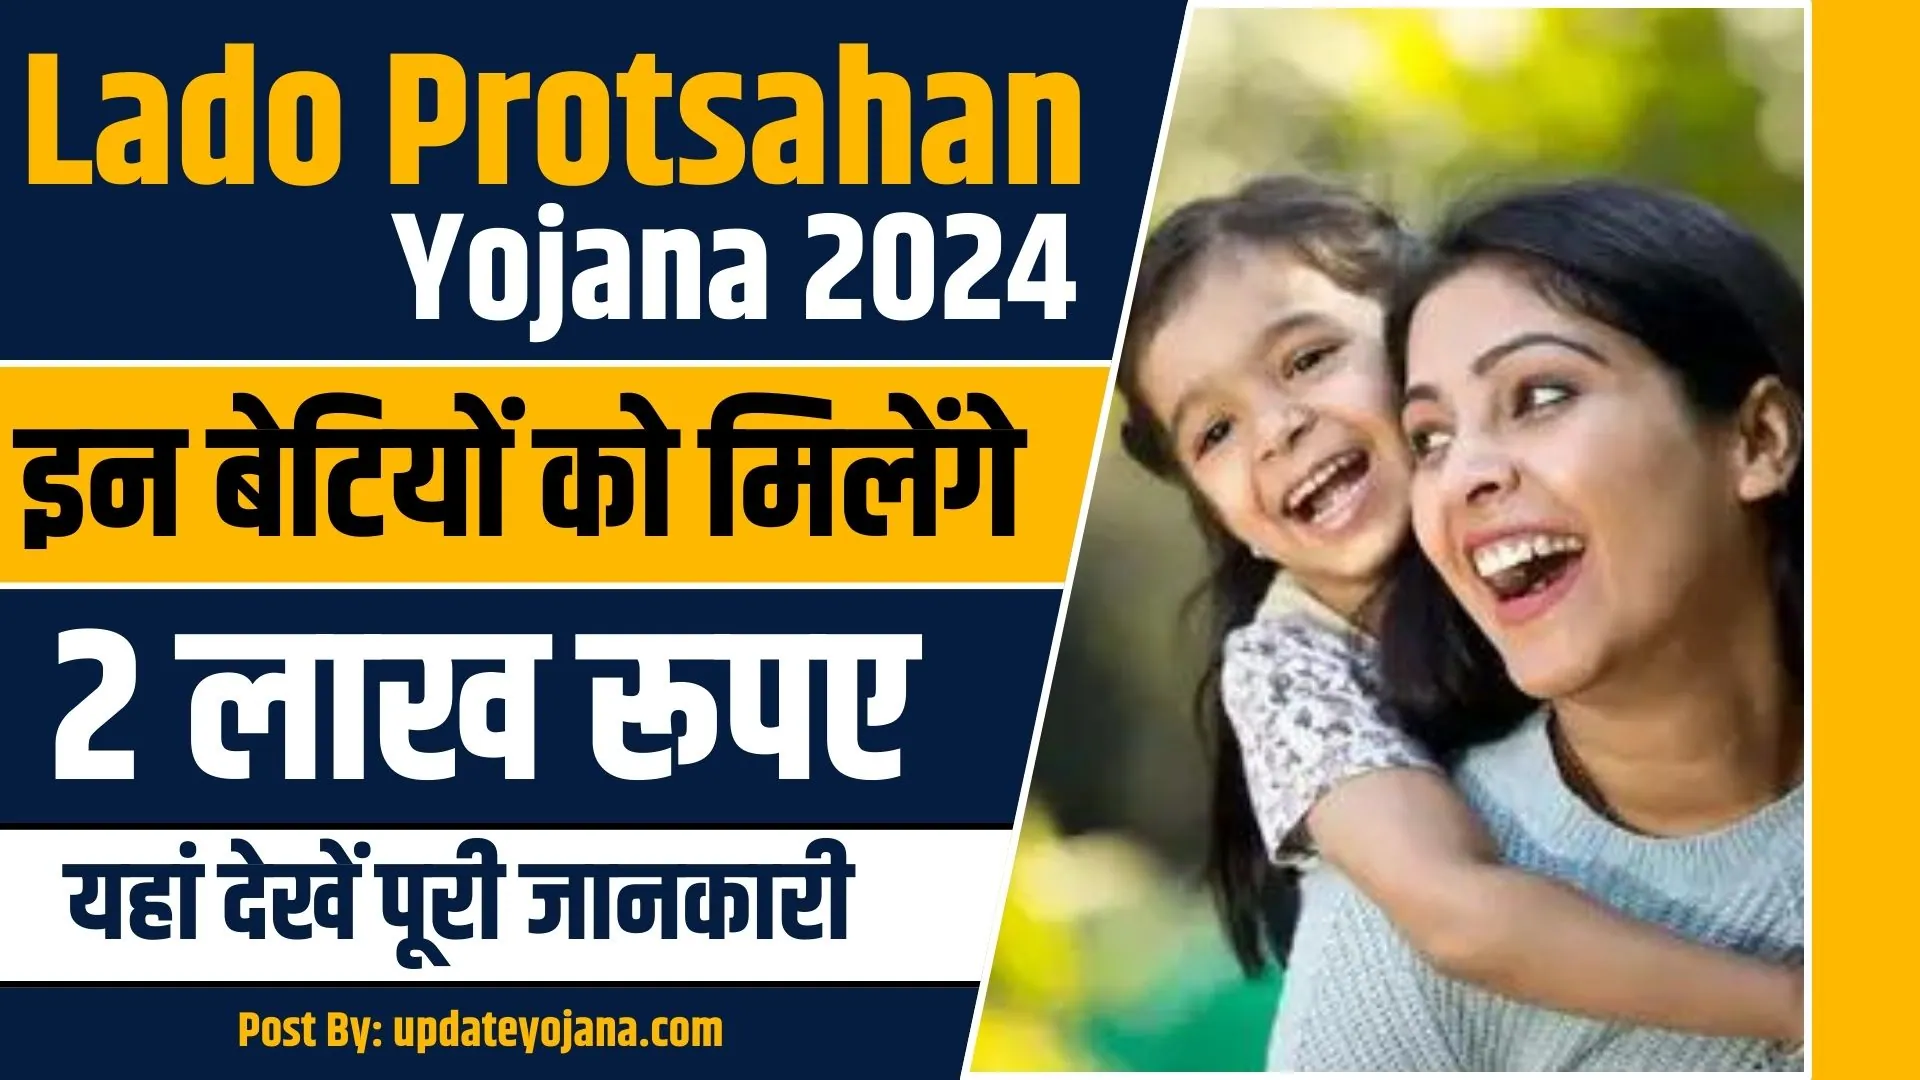 Lado-Protsahan-Yojana-2024